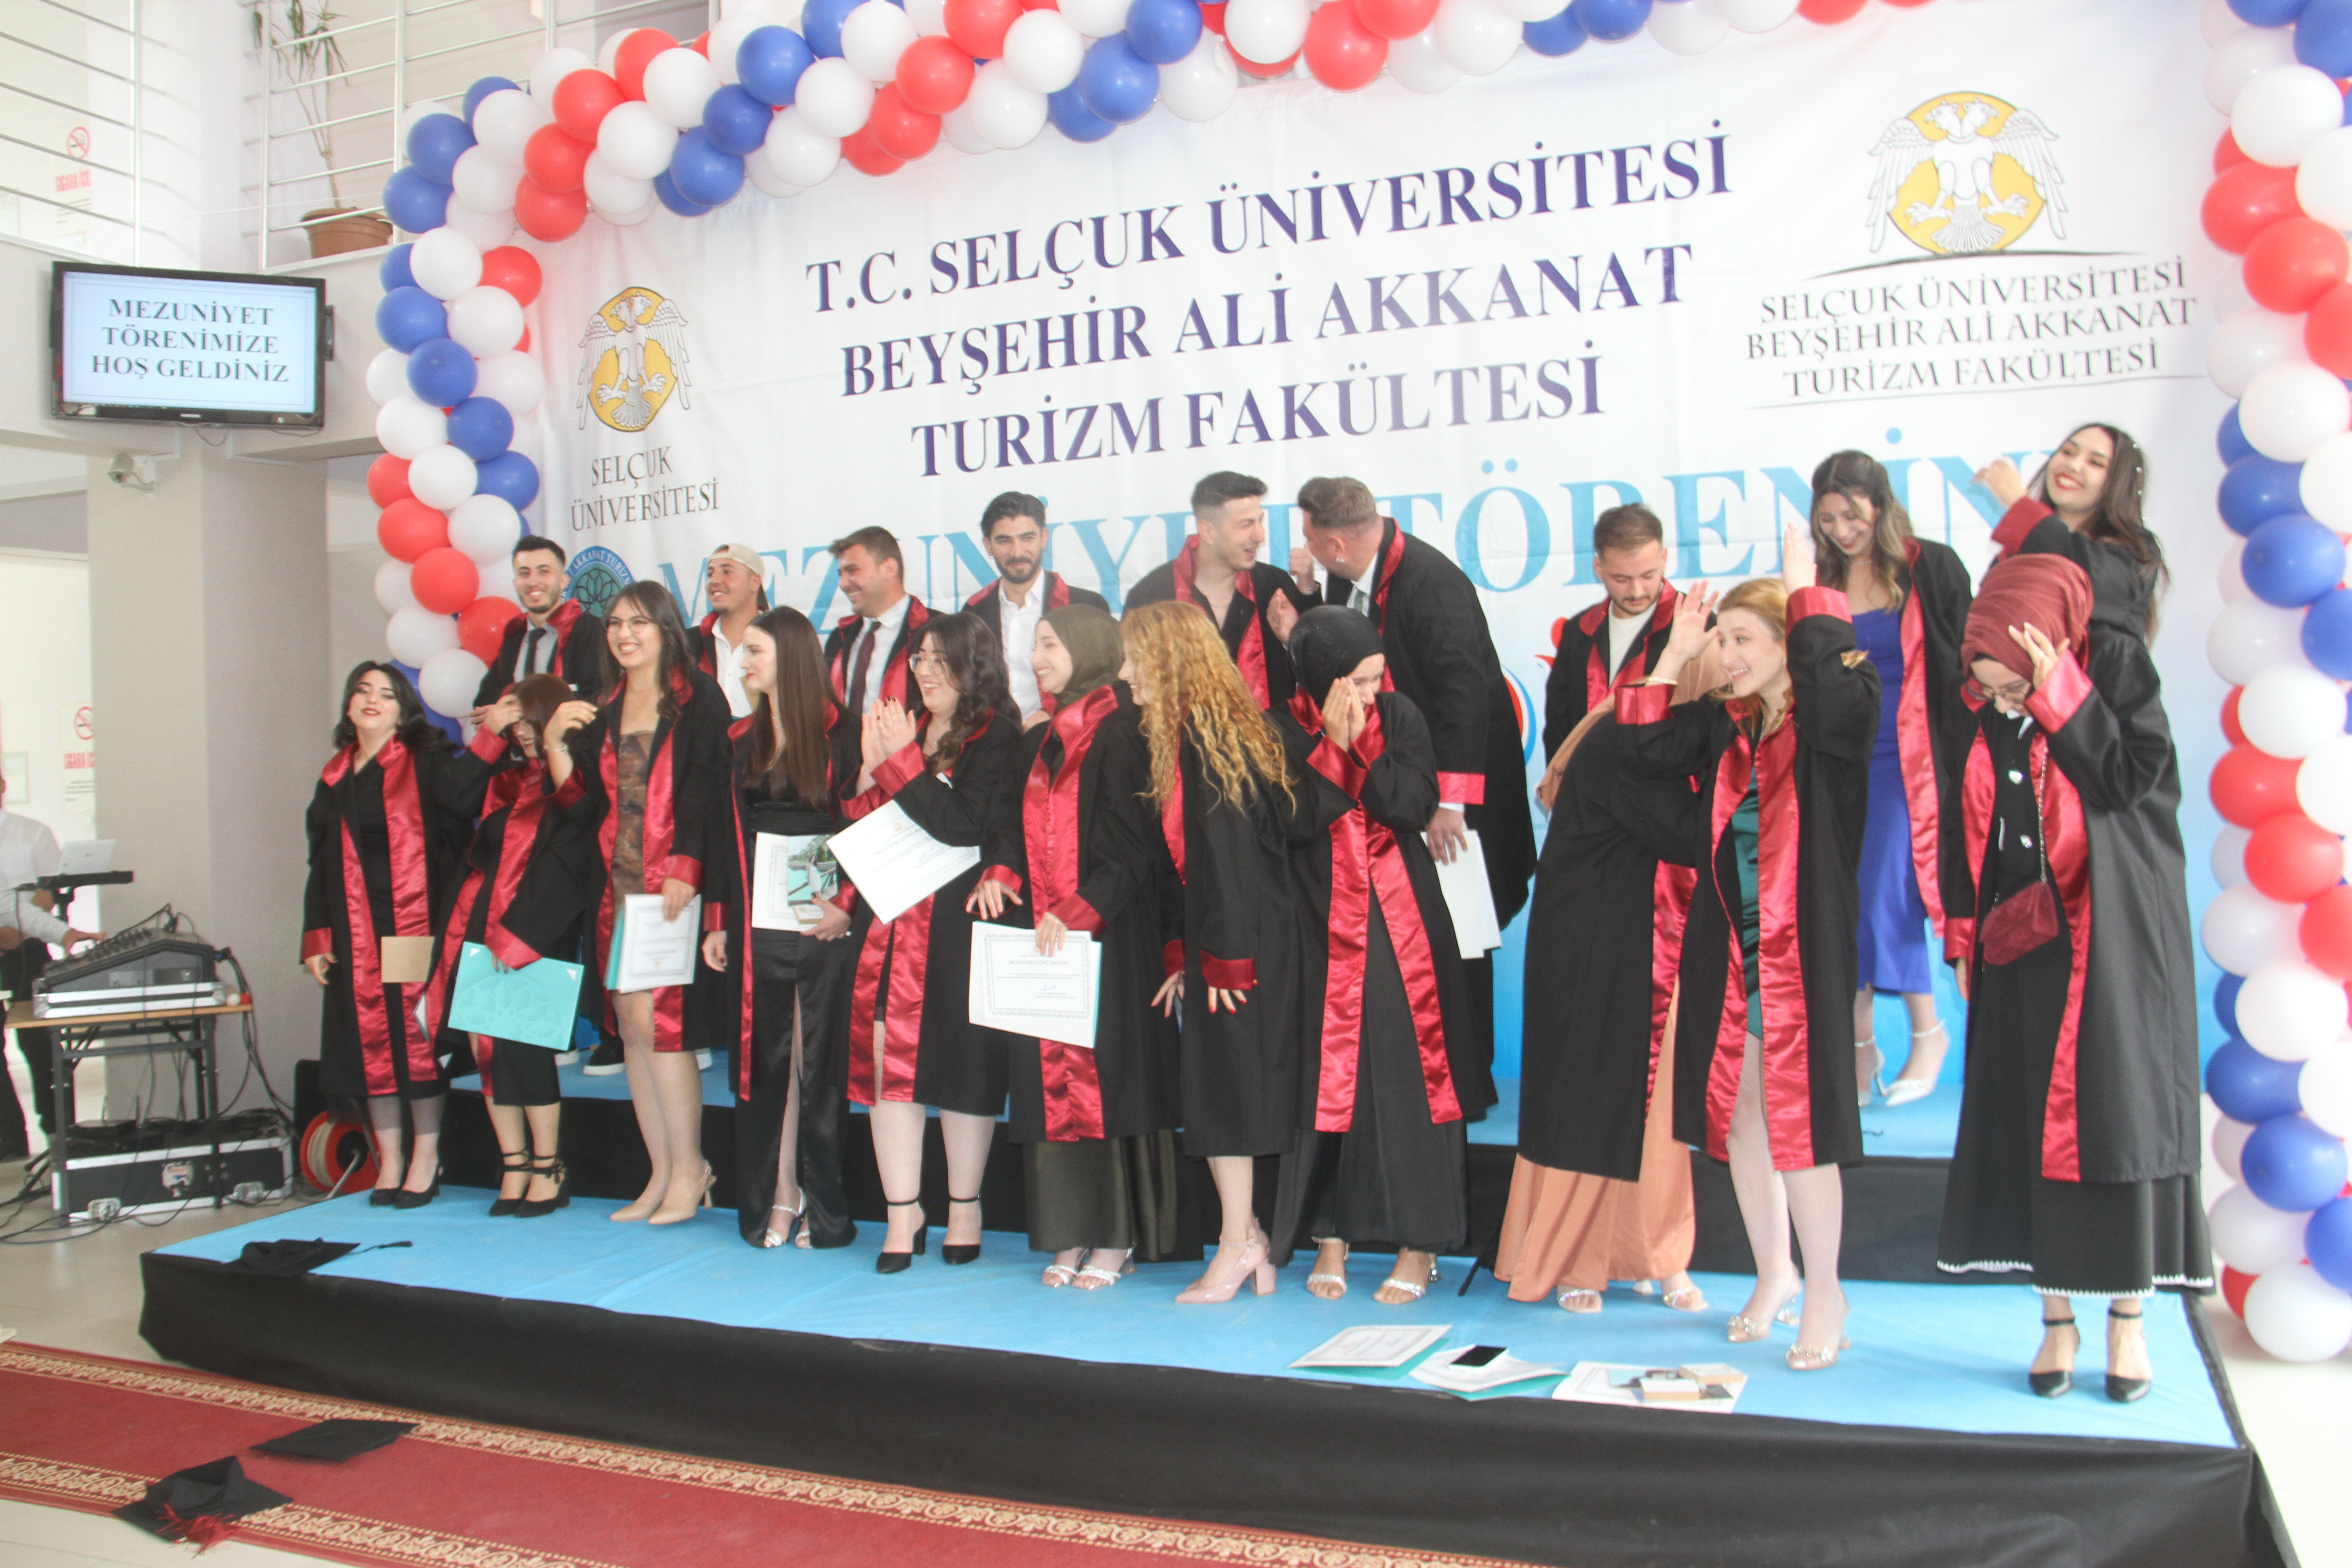 Beyşehir'de Turizm öğrencileri kep attı